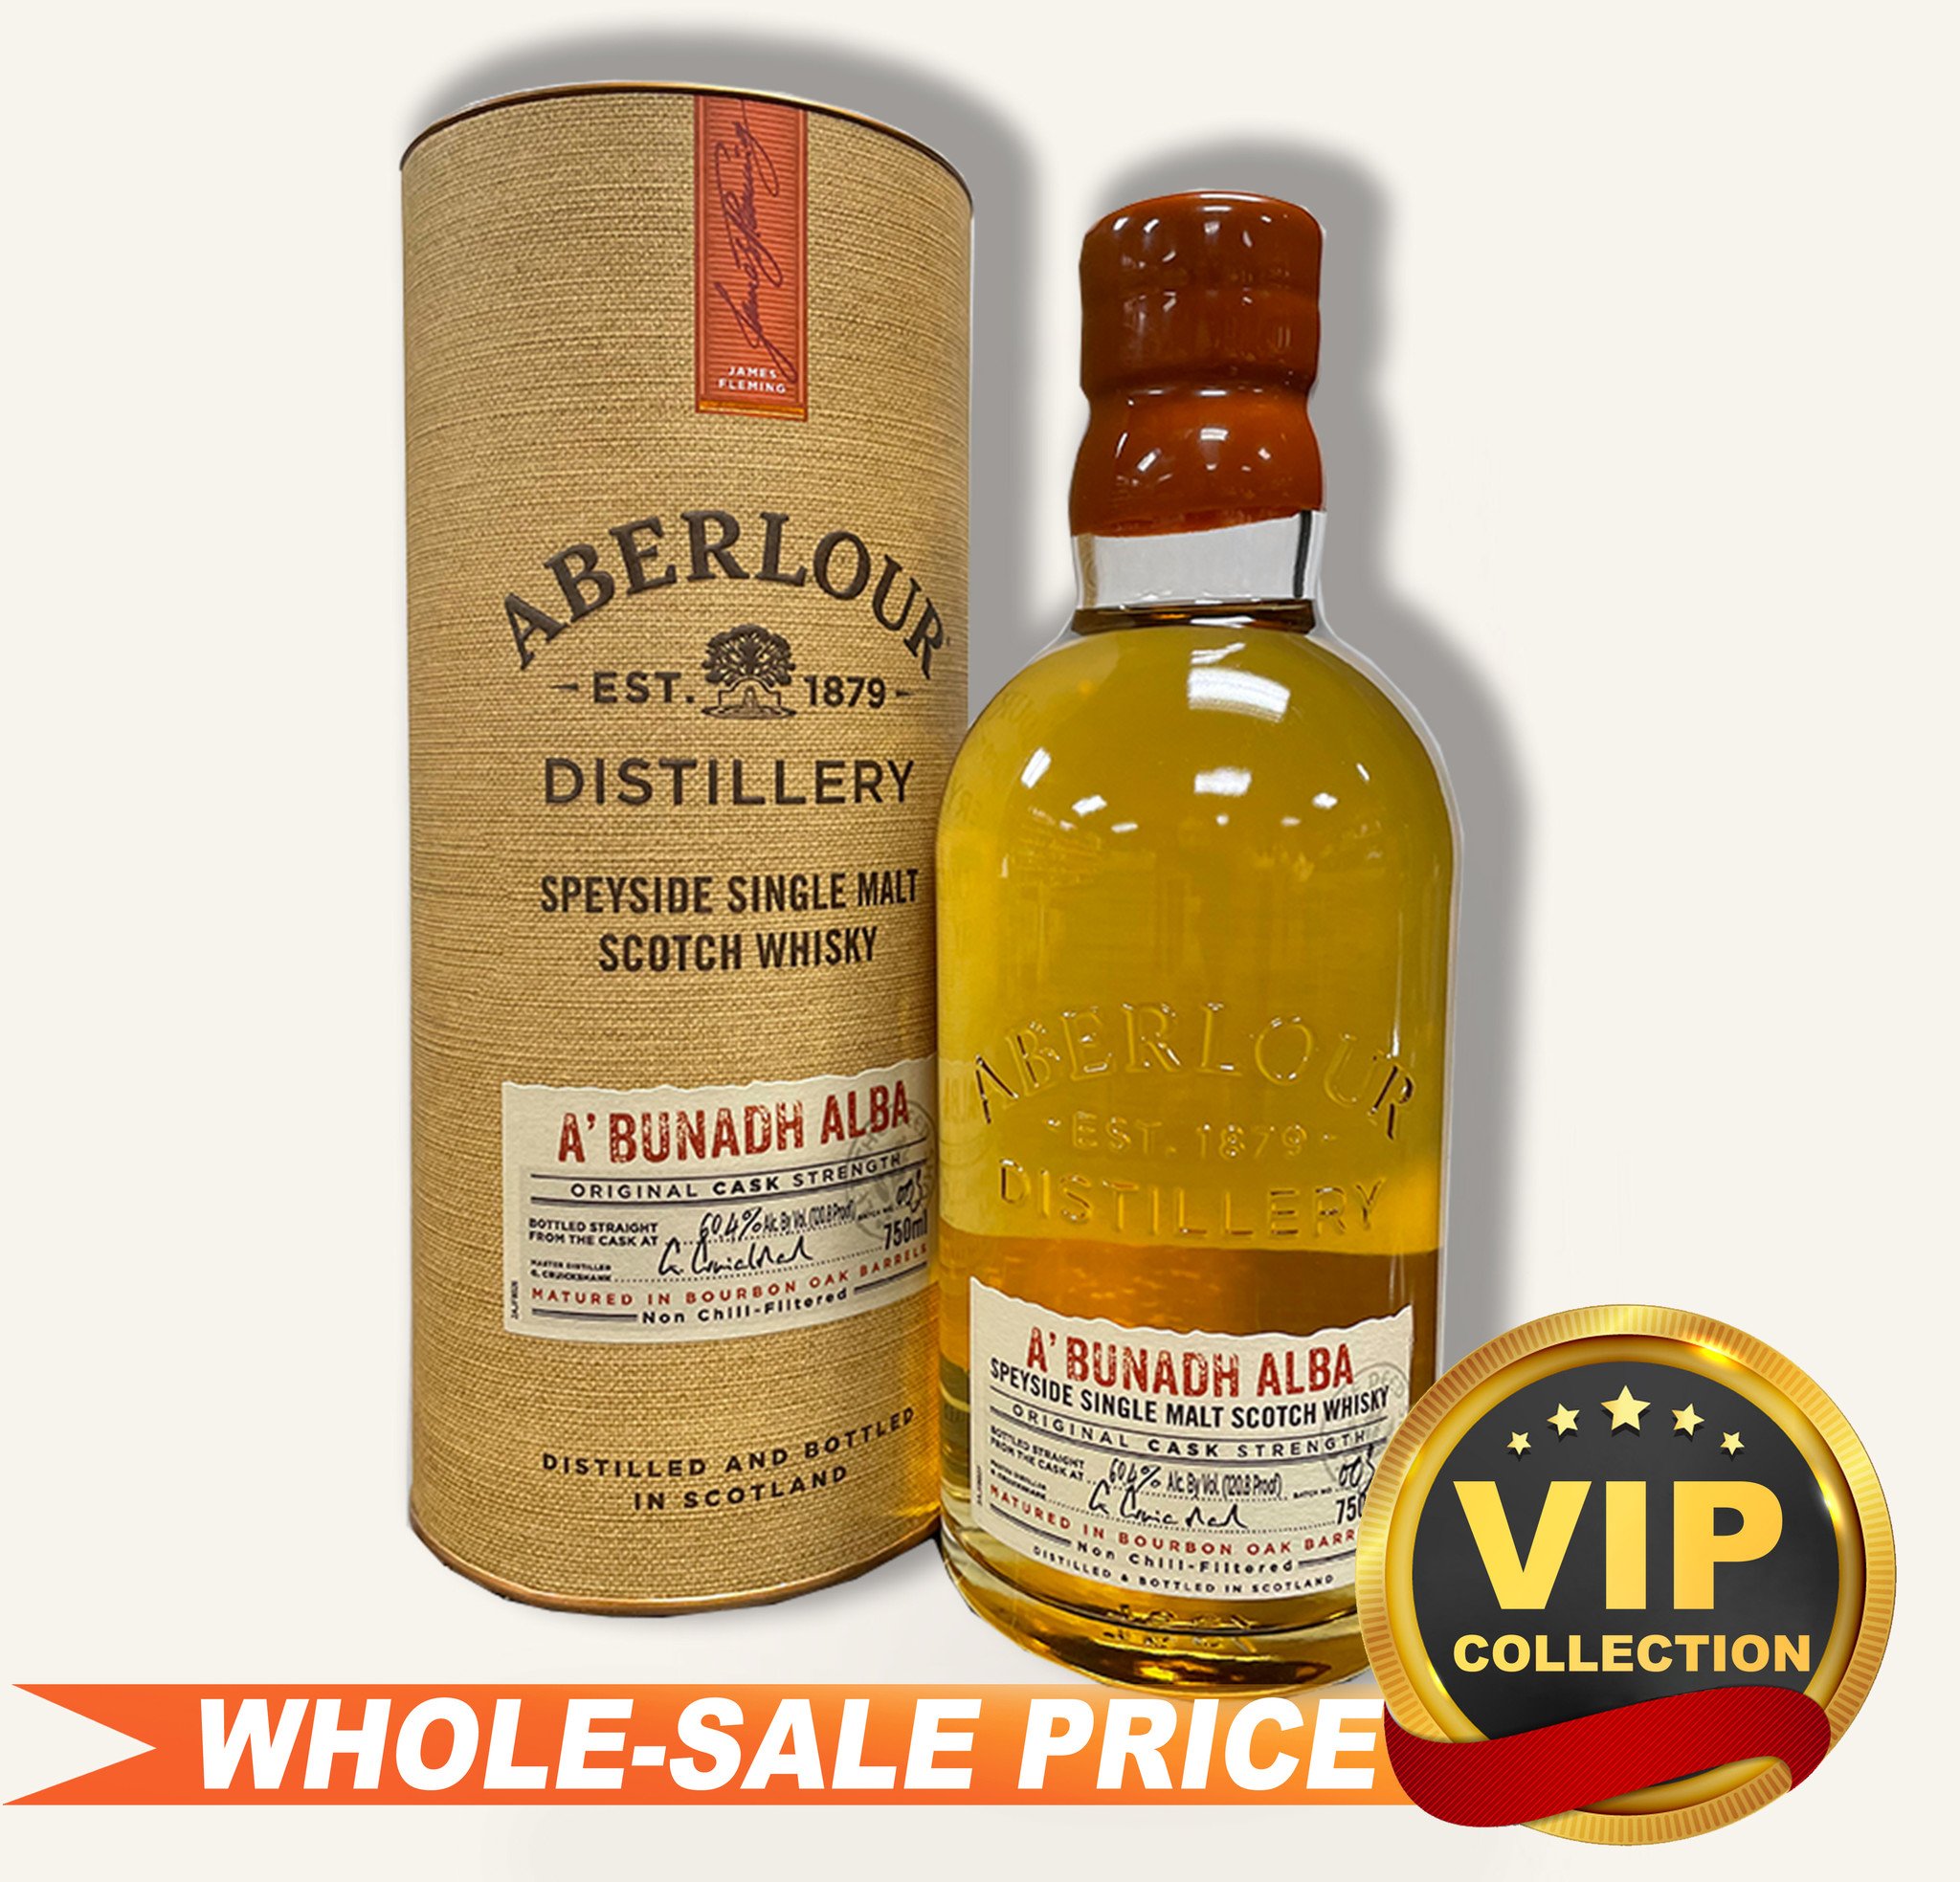 Aberlour A Bunadh Single Malt Scotch Whisky